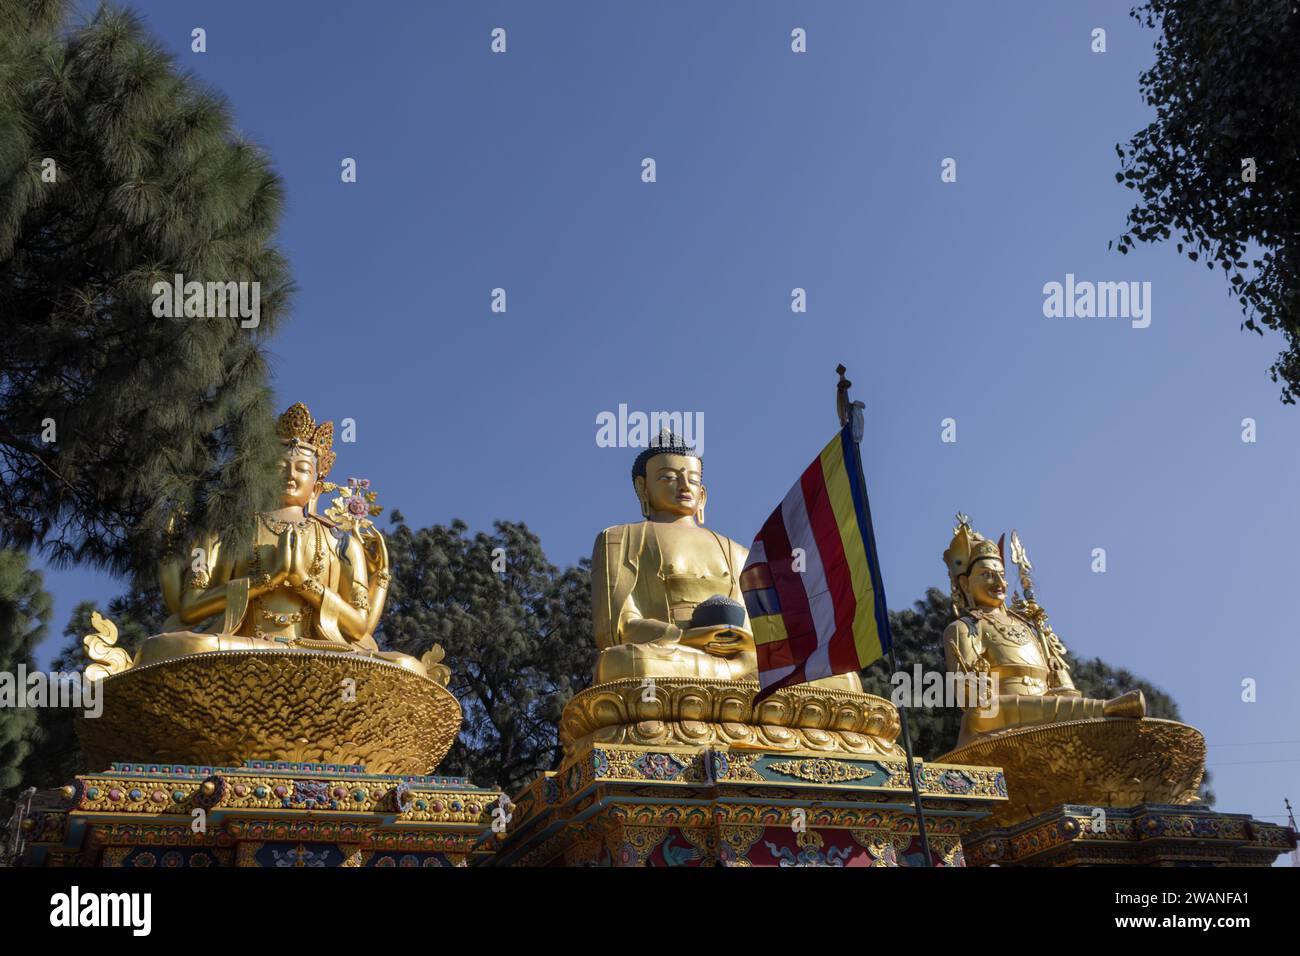 Les statues de Bouddha d'or dans le parc de Bouddha, la région de Swayambhunath, Katmandou, Népal, le site du patrimoine mondial déclaré par l'UNESCO Banque D'Images